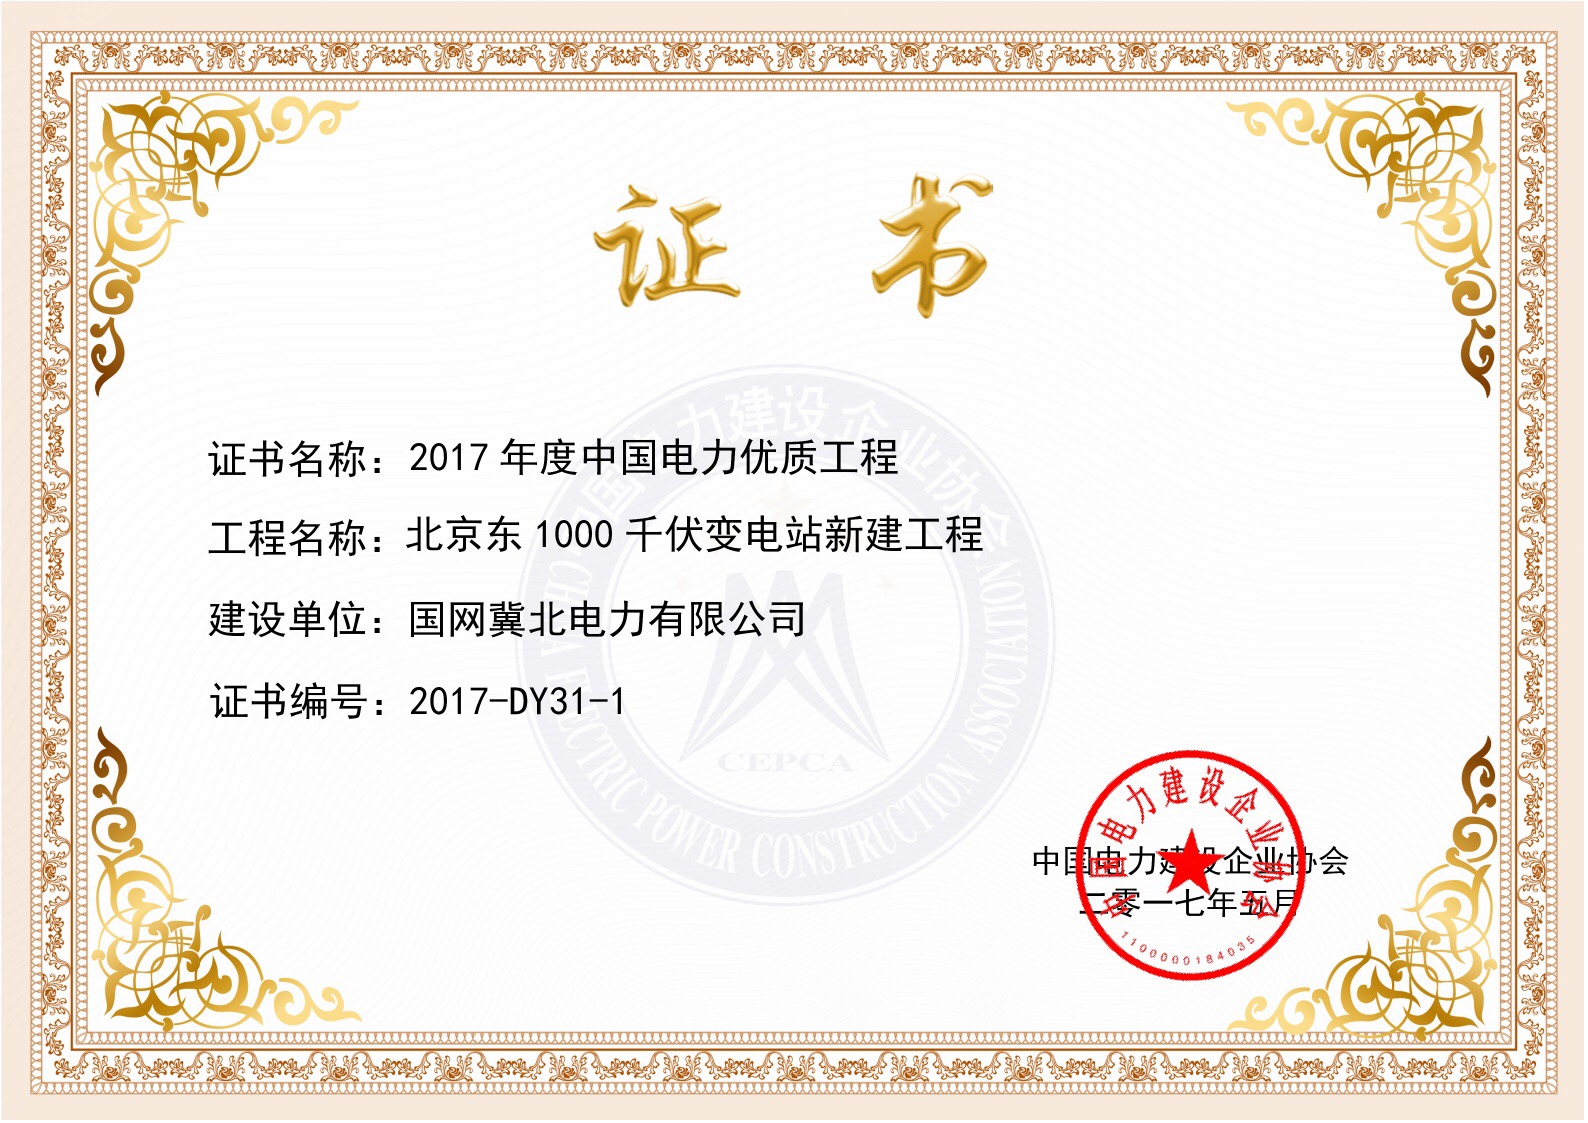 北京东变电站工程获得中国电力优质工程奖